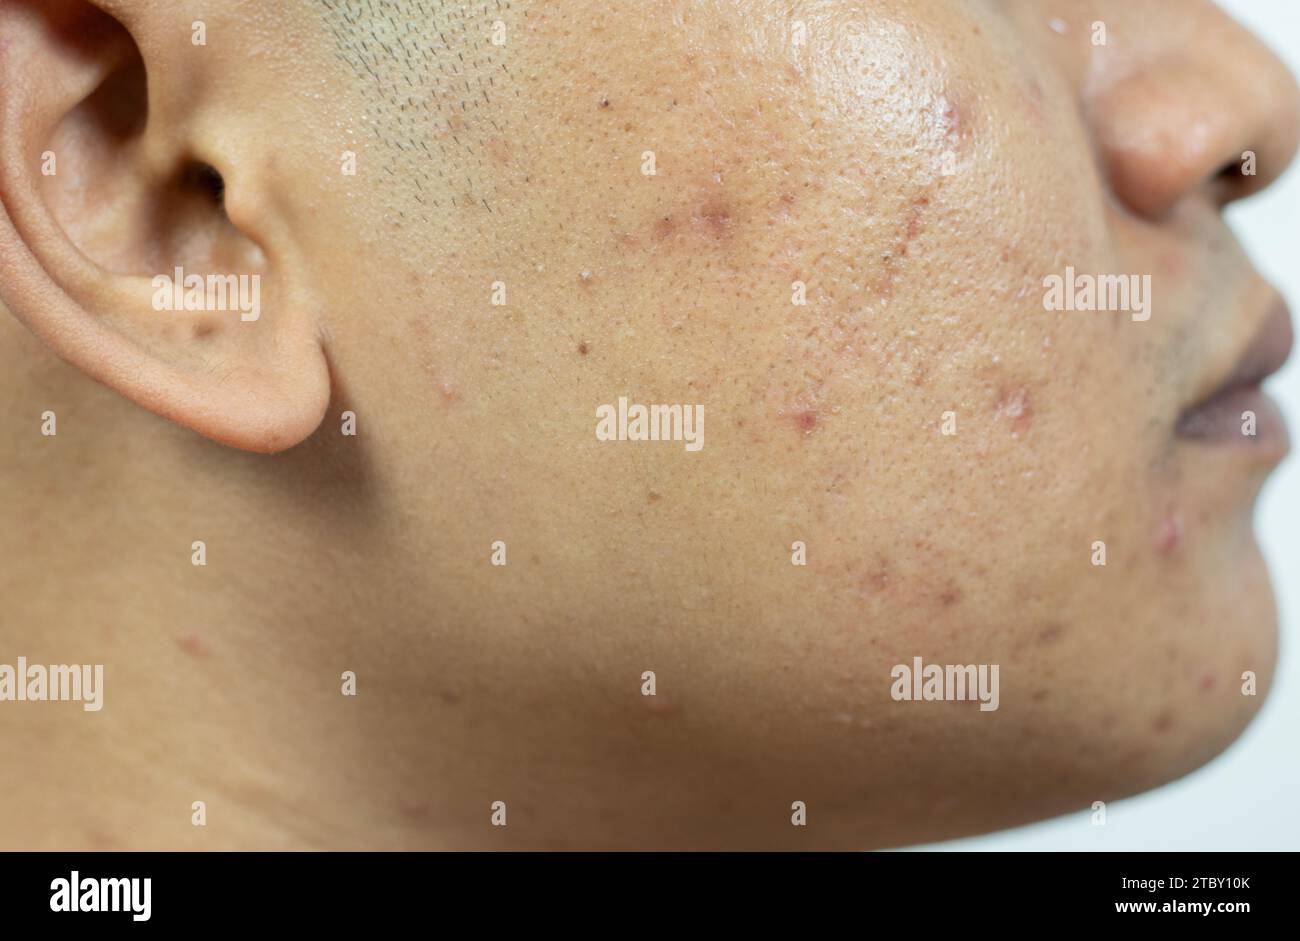 problèmes cutanés. problème de l'acné enflammée sur le visage. Acné enflammée se compose de gonflement, rougeur, et pores qui sont sévèrement obstrués par des bactéries, o Banque D'Images